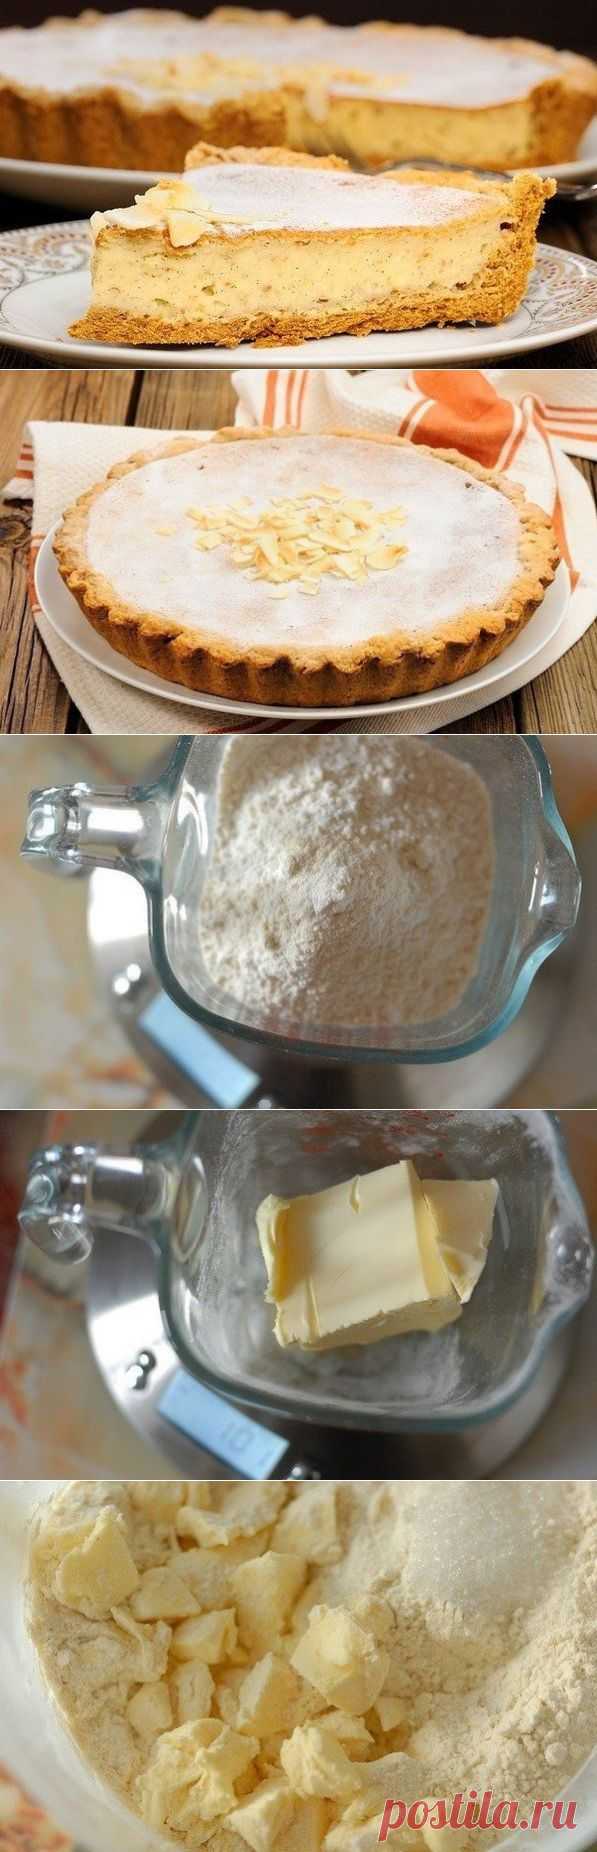 Как приготовить пирог с творогом и бананом - рецепт, ингридиенты и фотографии